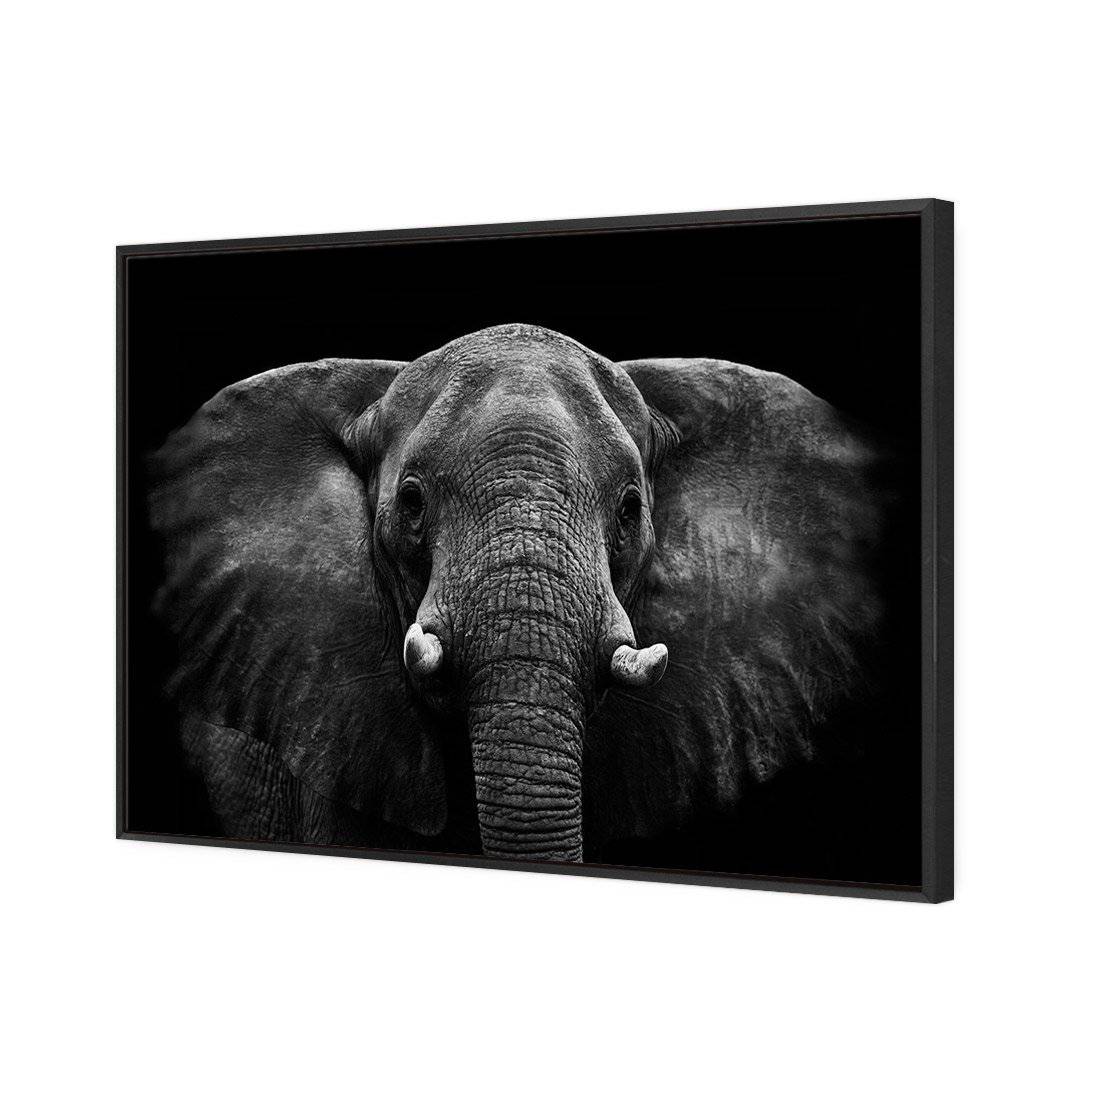 Regal Elephant Canvas Art-Canvas-Wall Art Designs-45x30cm-Canvas - Black Frame-Wall Art Designs